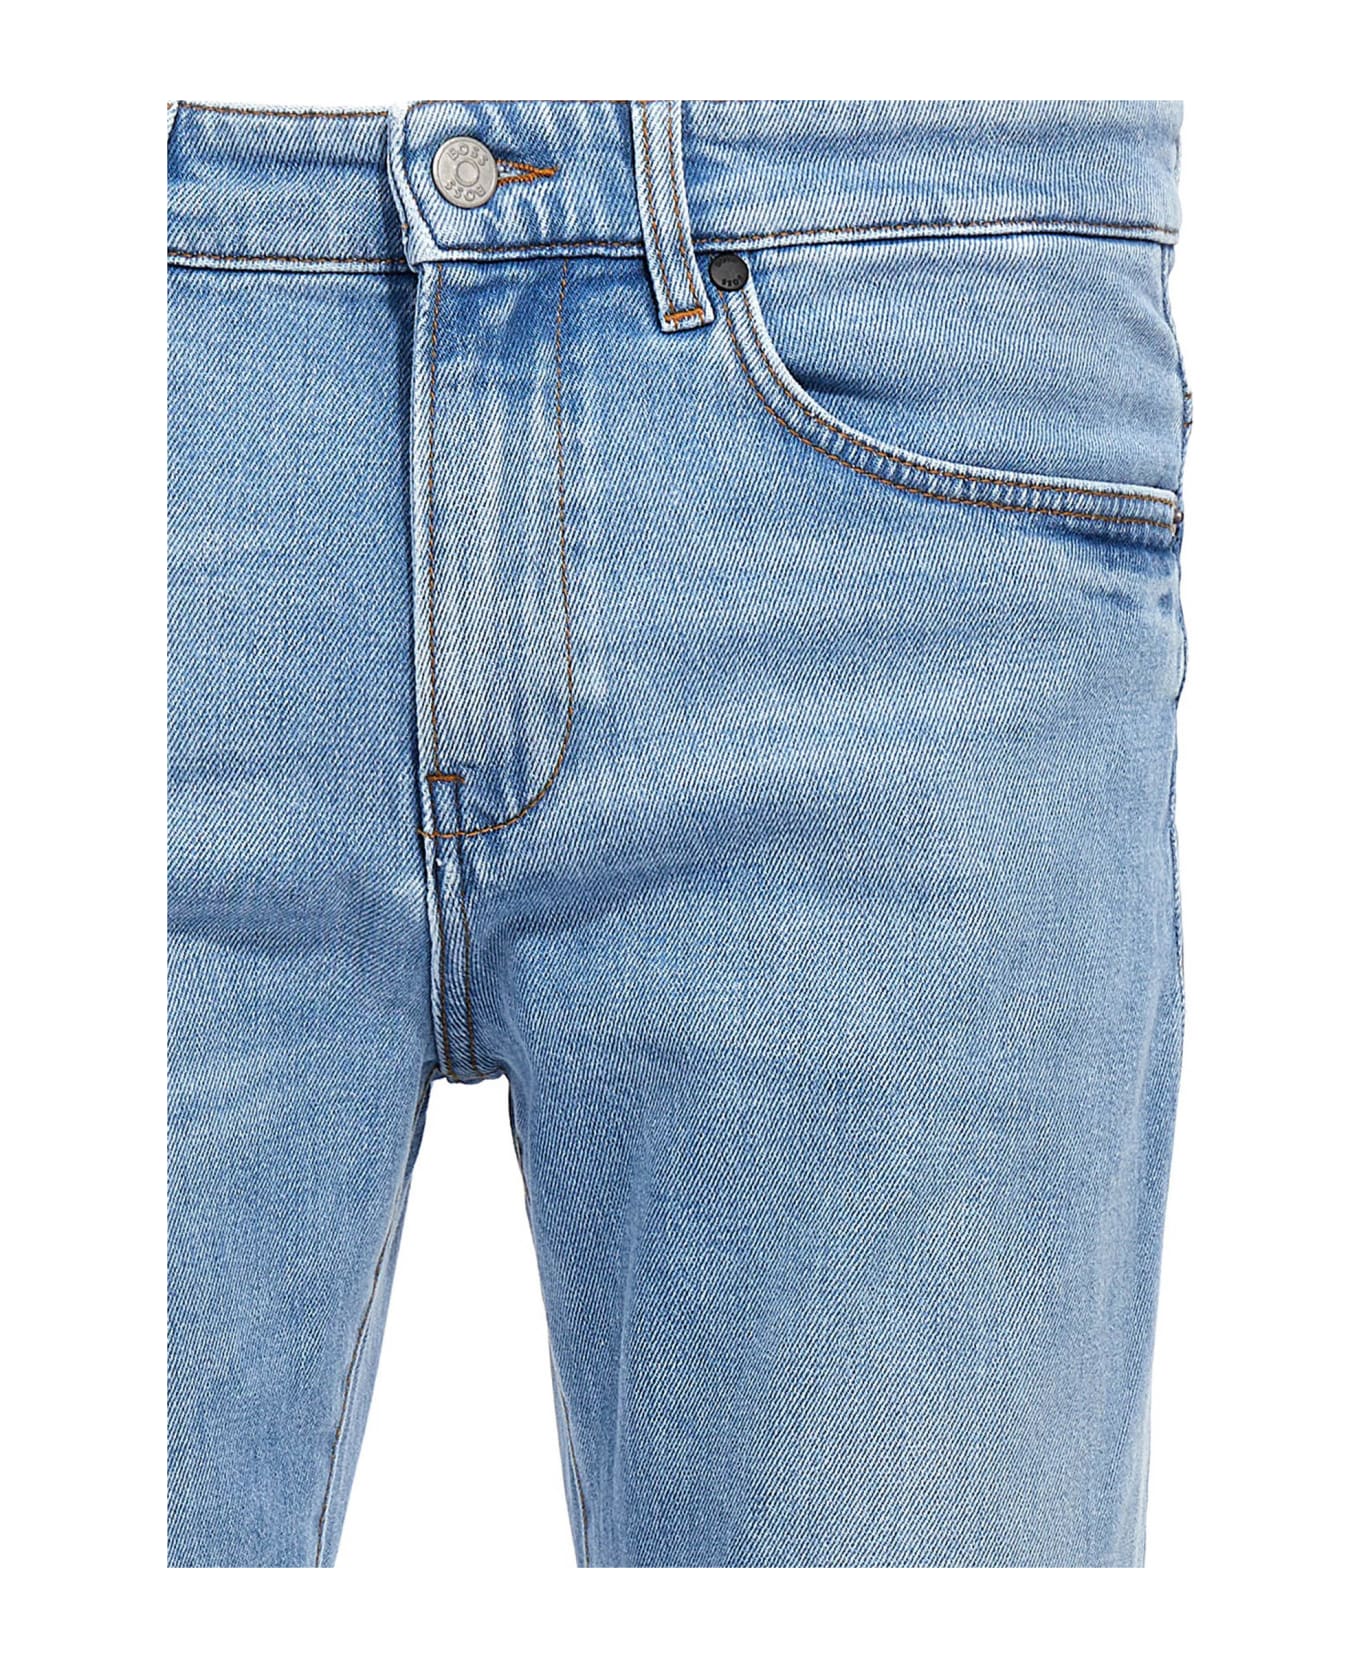 Hugo Boss 'delaware' Jeans - Light Blue